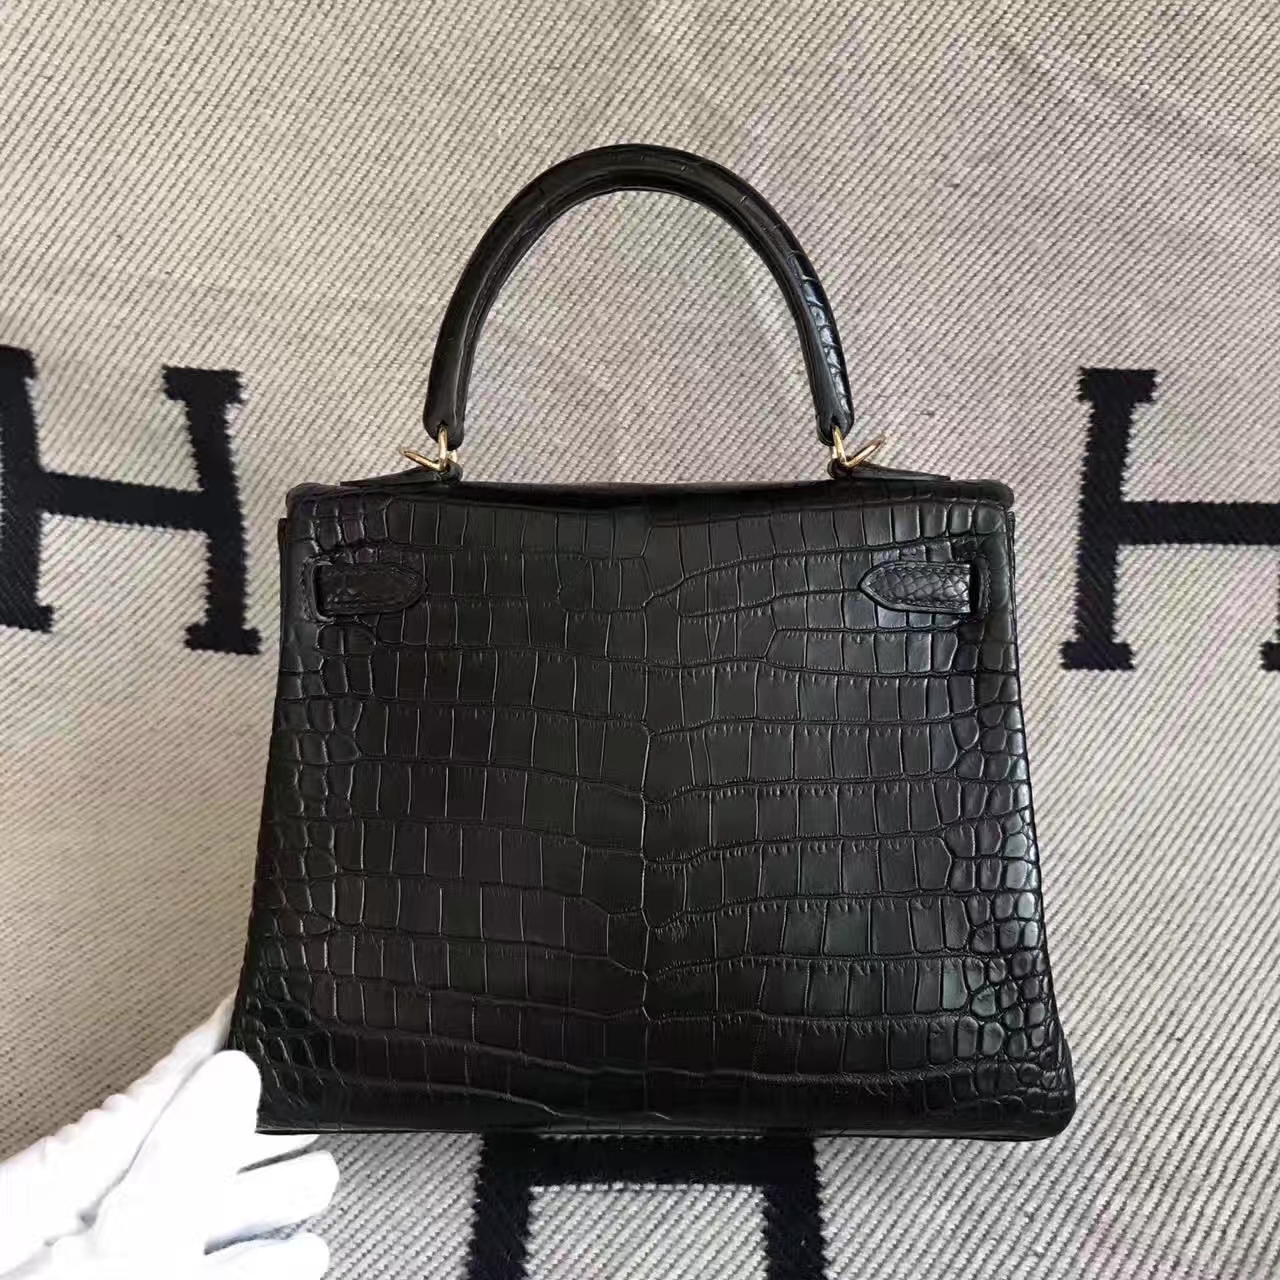 High Quality Hermes Kelly Bag 25CM in CK89 Black Porosus Matt Leather